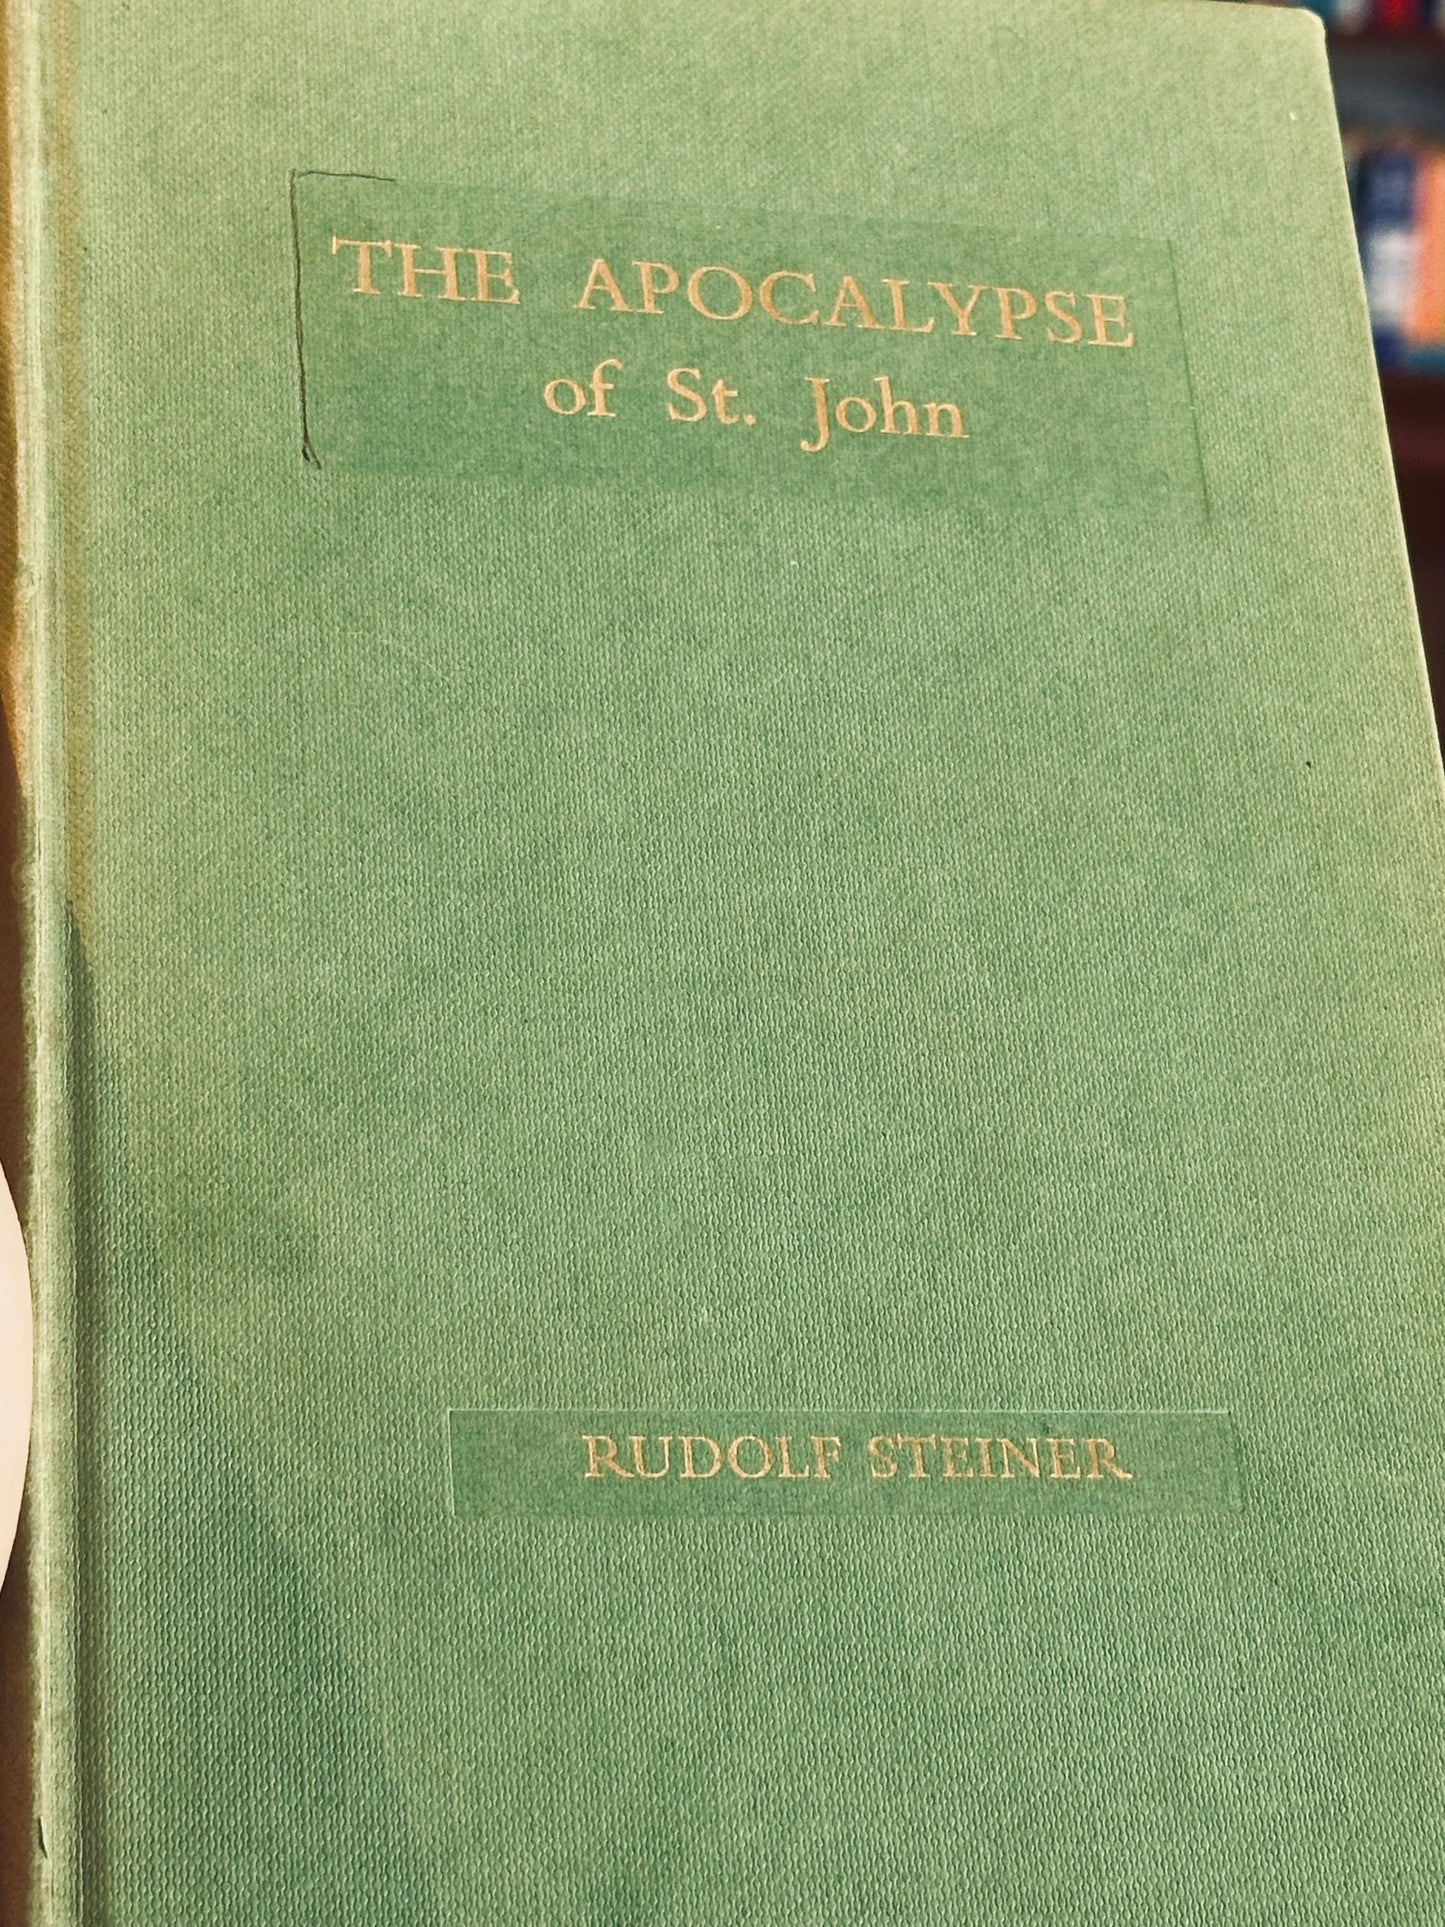 The Apocalypse of St. John by Rudolf Steiner